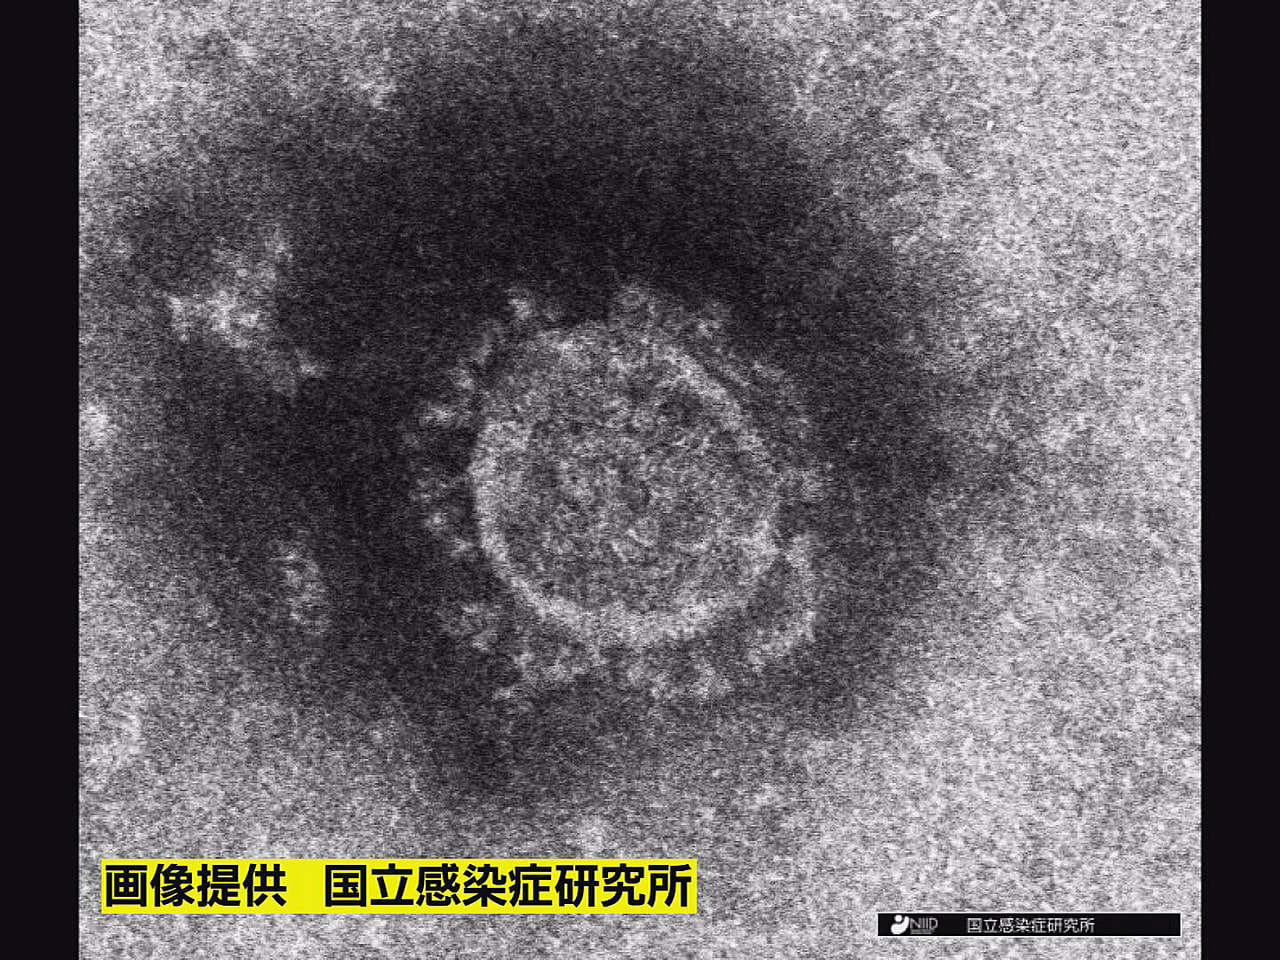 岐阜県は７日、新型コロナウイルスの新規感染者が７６６人確認されたと発表しました。...